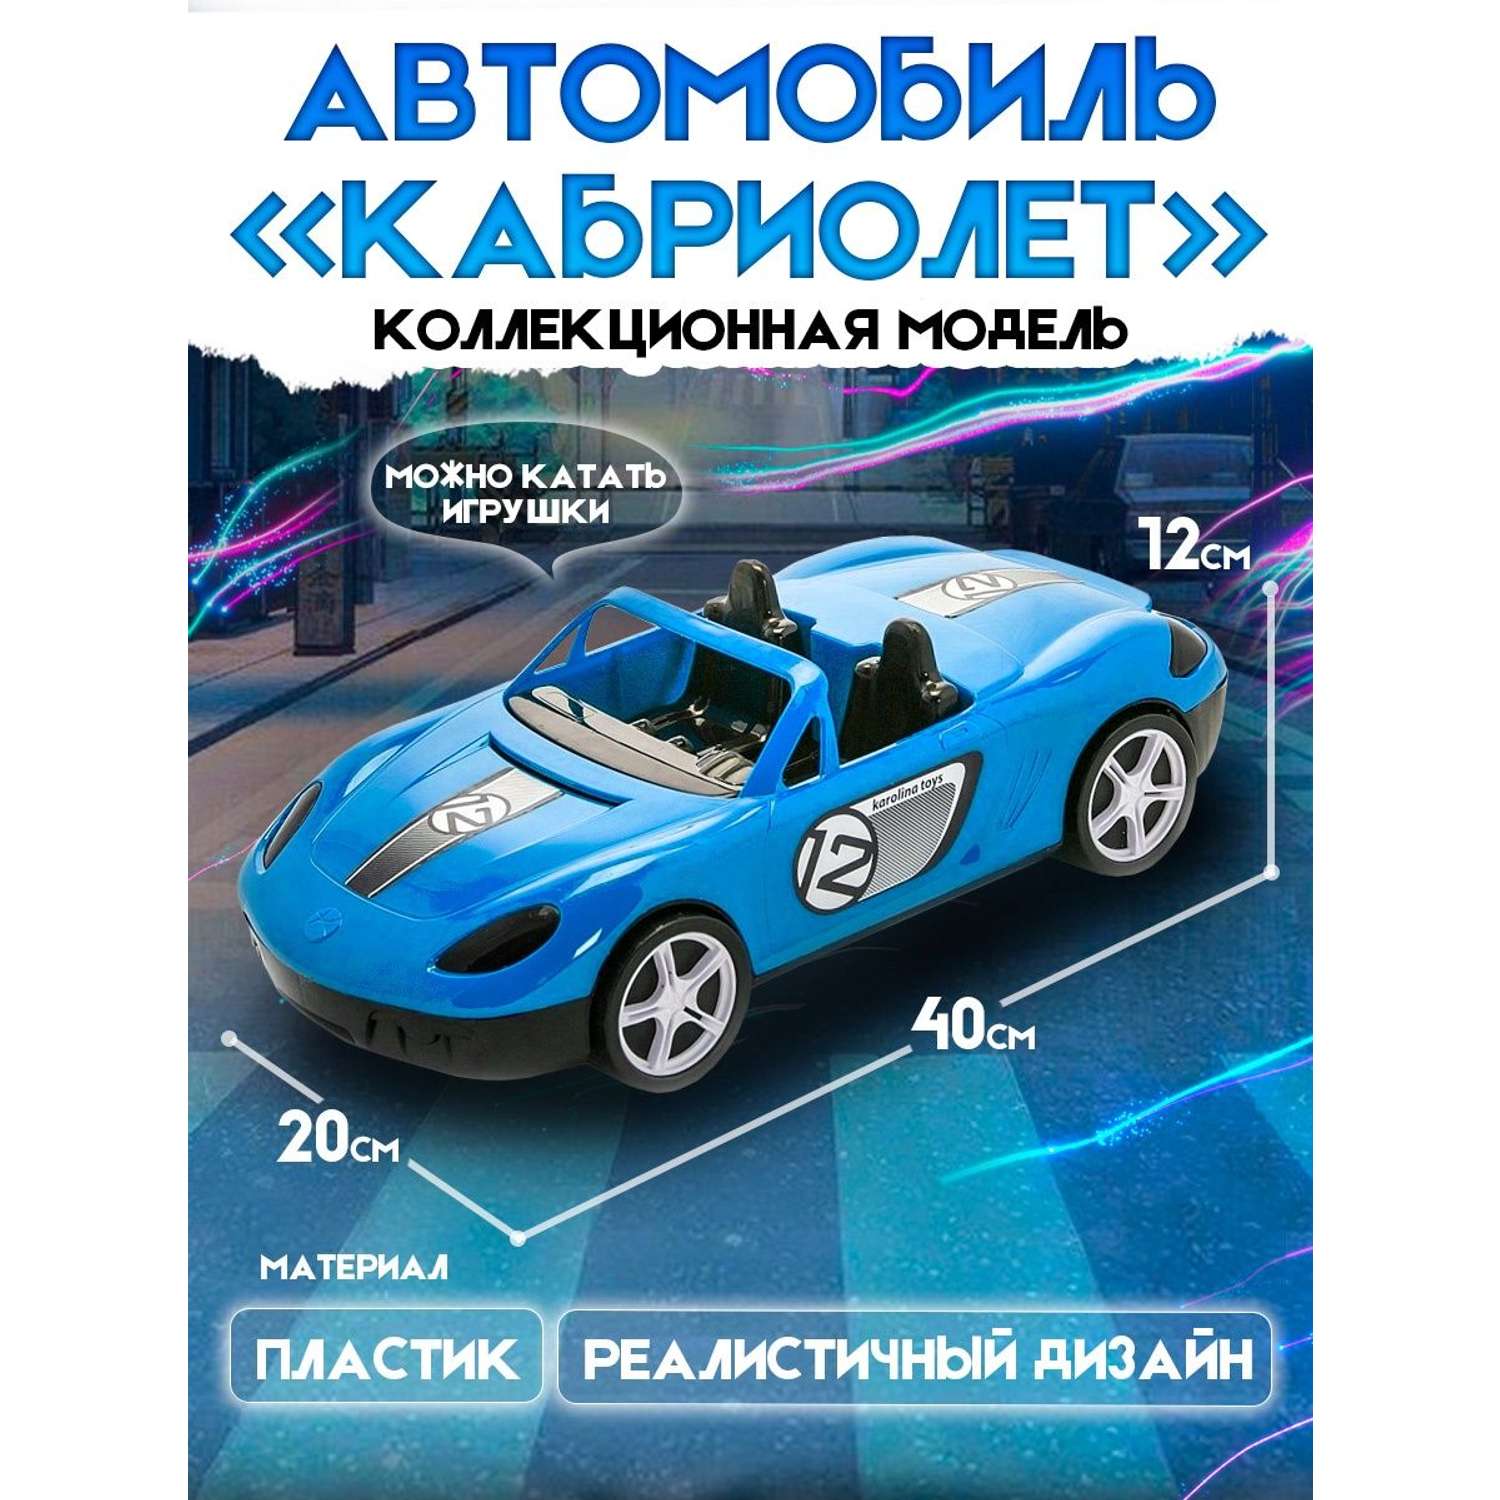 Машинка Karolina toys Кабриолет пластмассовая синяя 40-0034/синий - фото 2